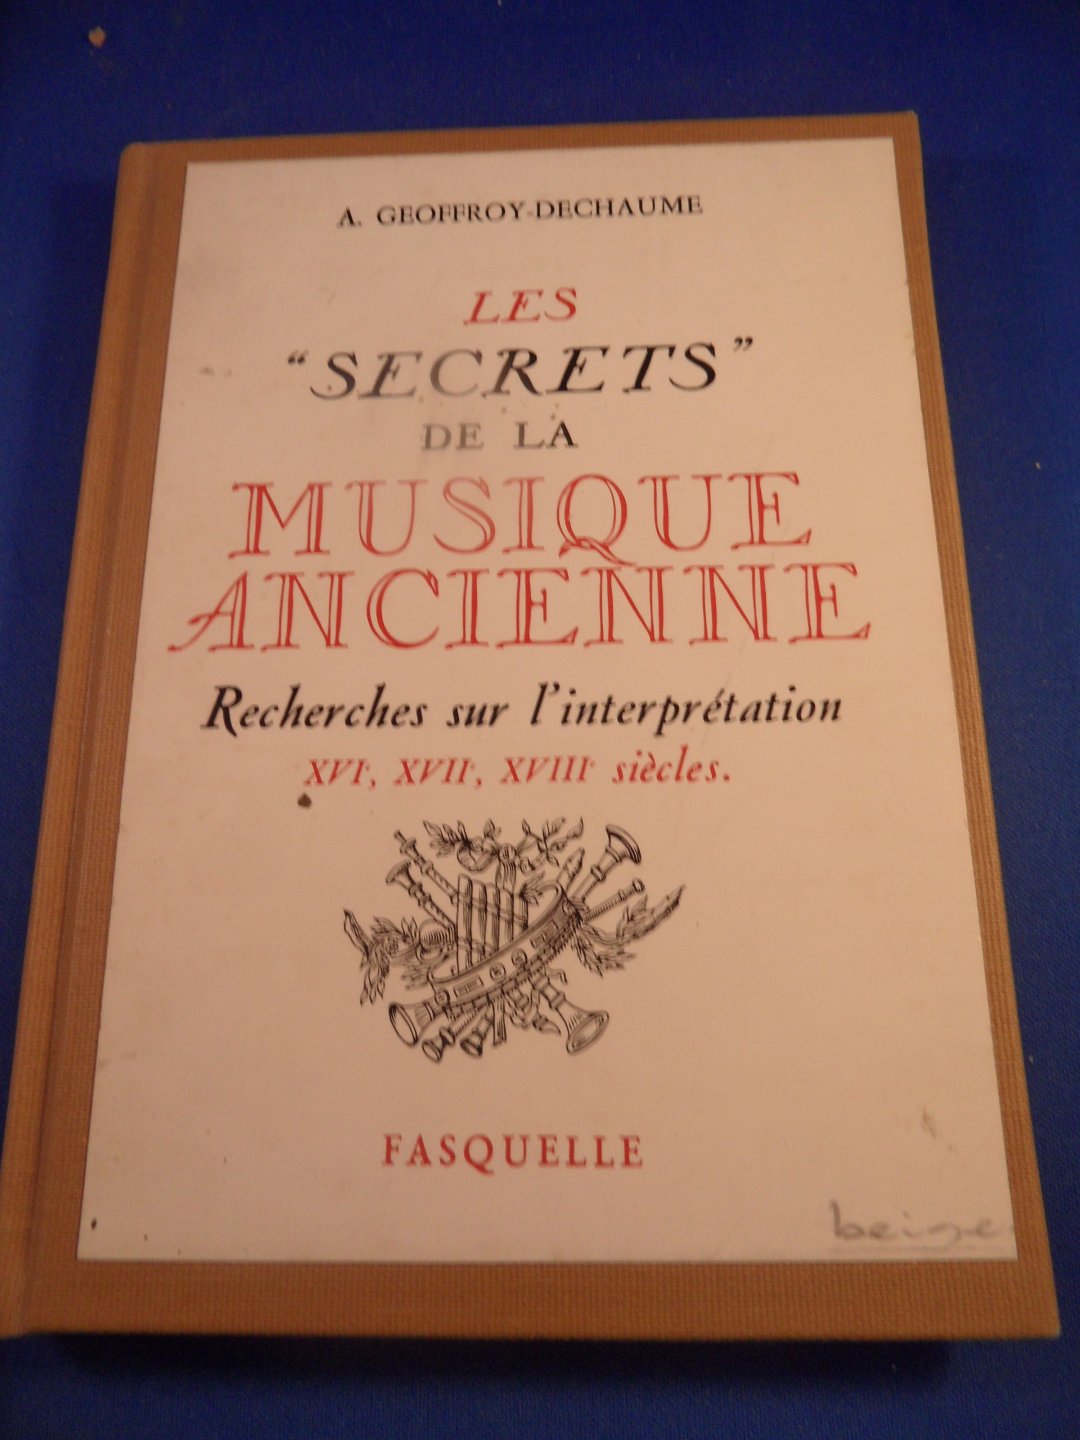 Dechaume-Geoffroy, A. - Les secrets de la musique ancienne. Recherches sur l'interprétation 16e, 17e, 18e siecles